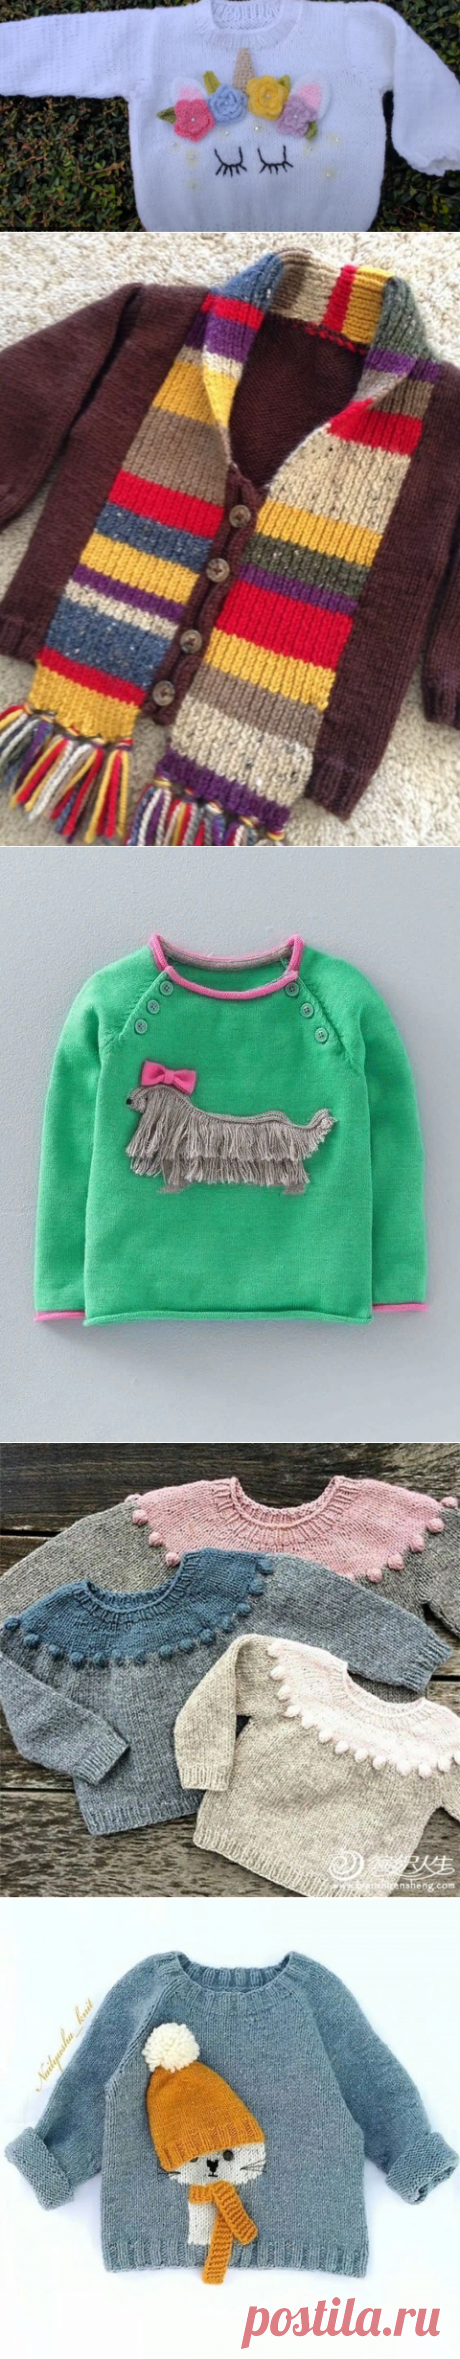 Интересные модели вязаной одежды для детей. Подборка. | Handmade для всех | Яндекс Дзен